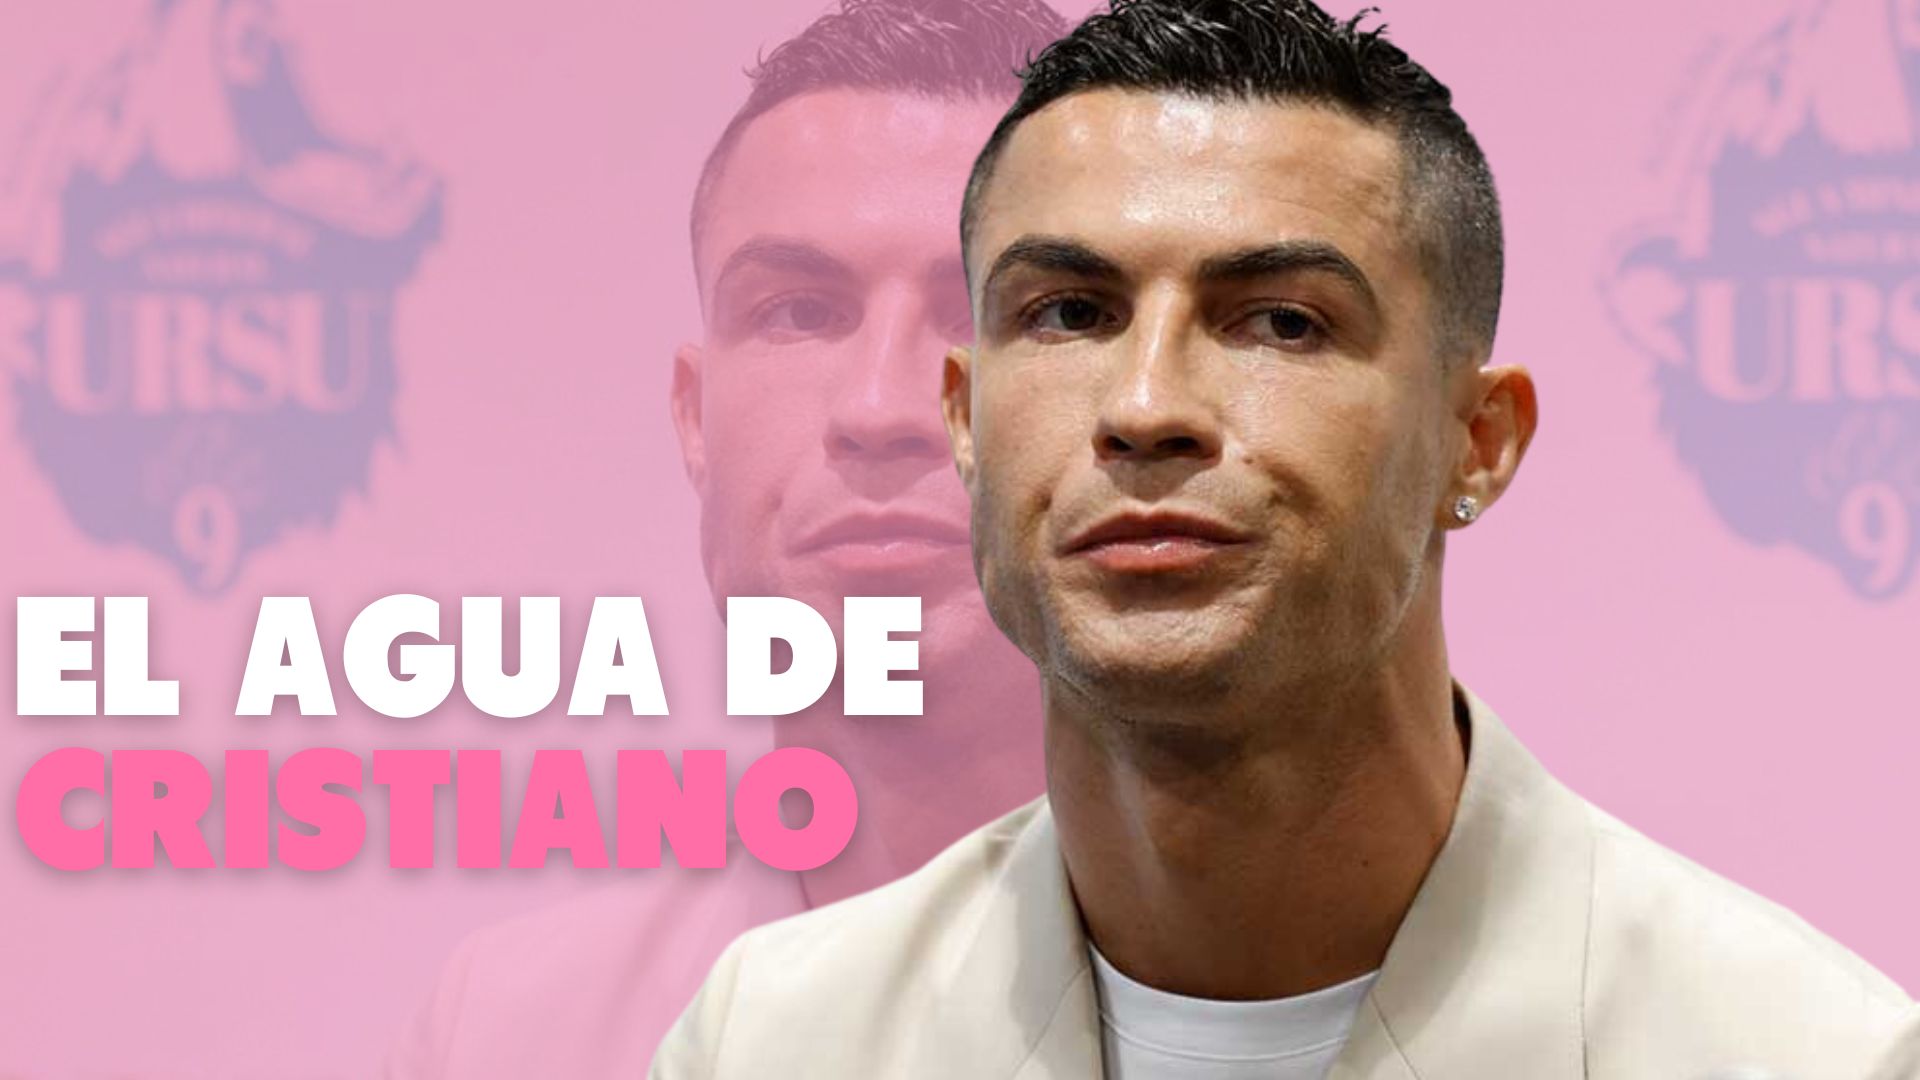 Denuncian los engaños de Ursu9, la marca de agua de Cristiano Ronaldo